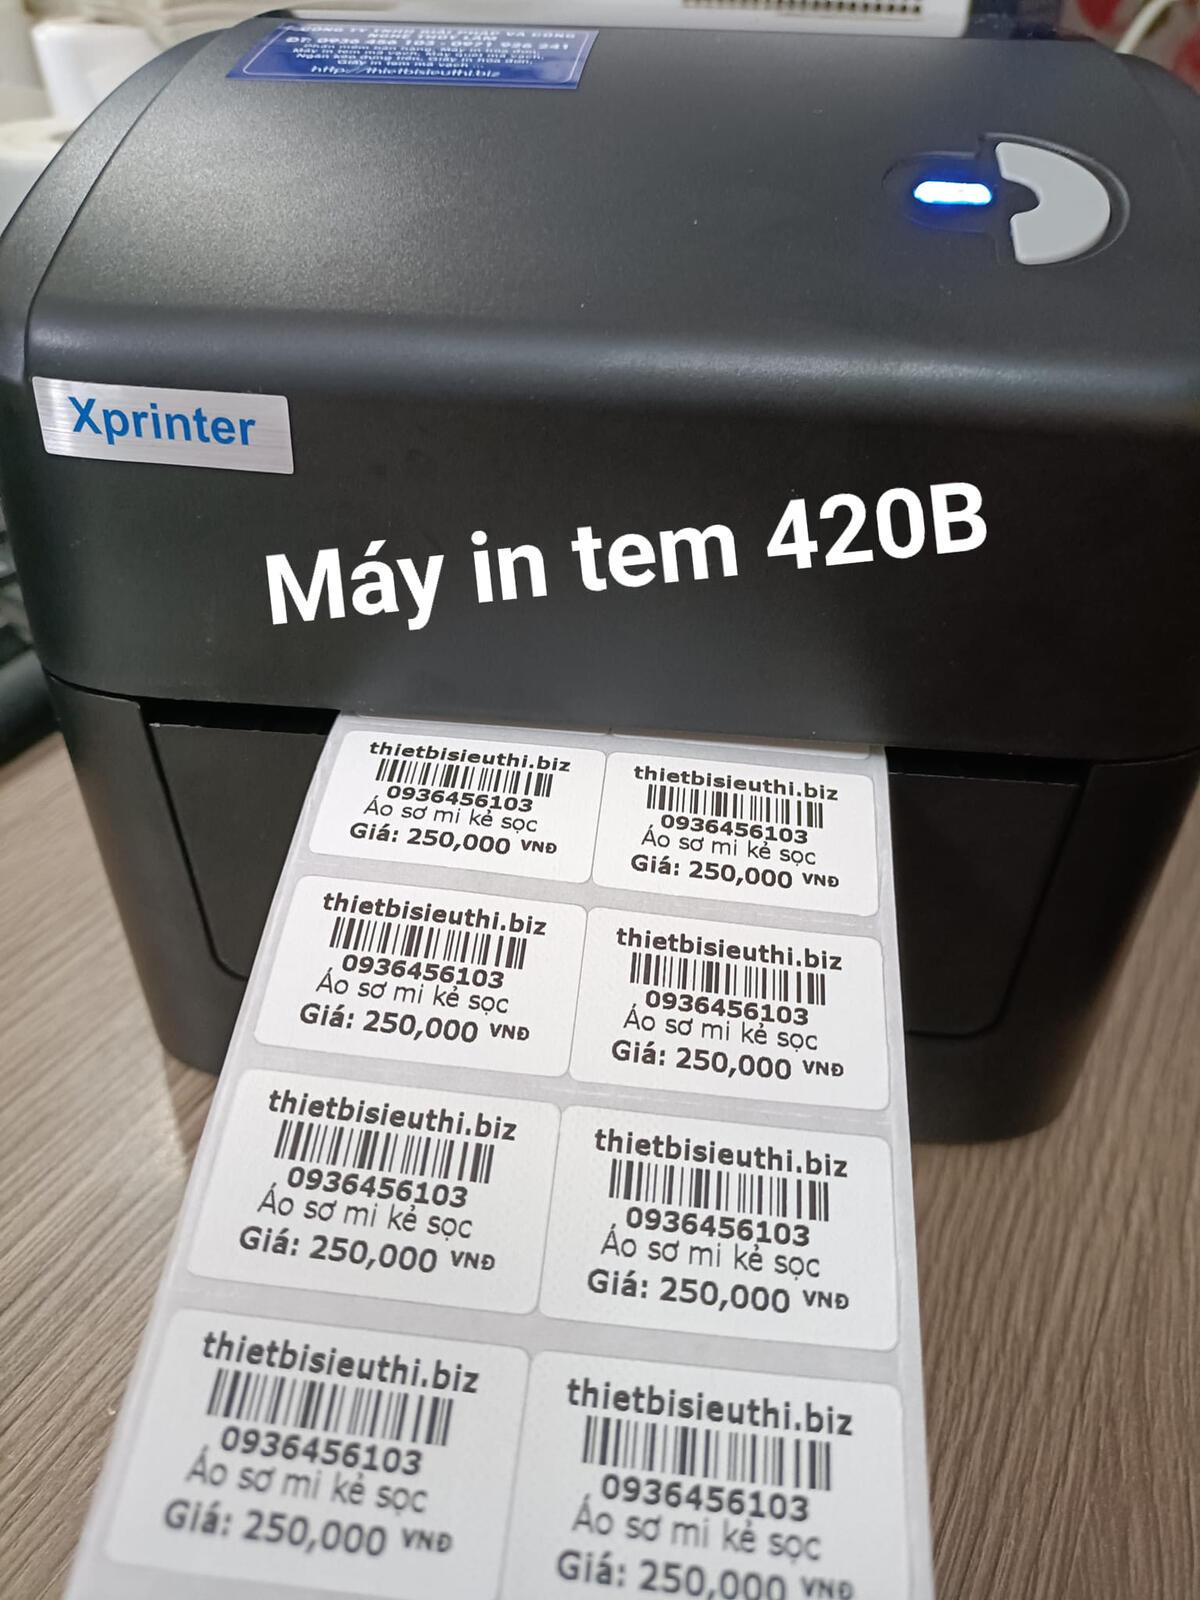 Cách cài đặt máy in Xprinter 420B để in đơn hàng trên các sàn thương mại điện tử?
